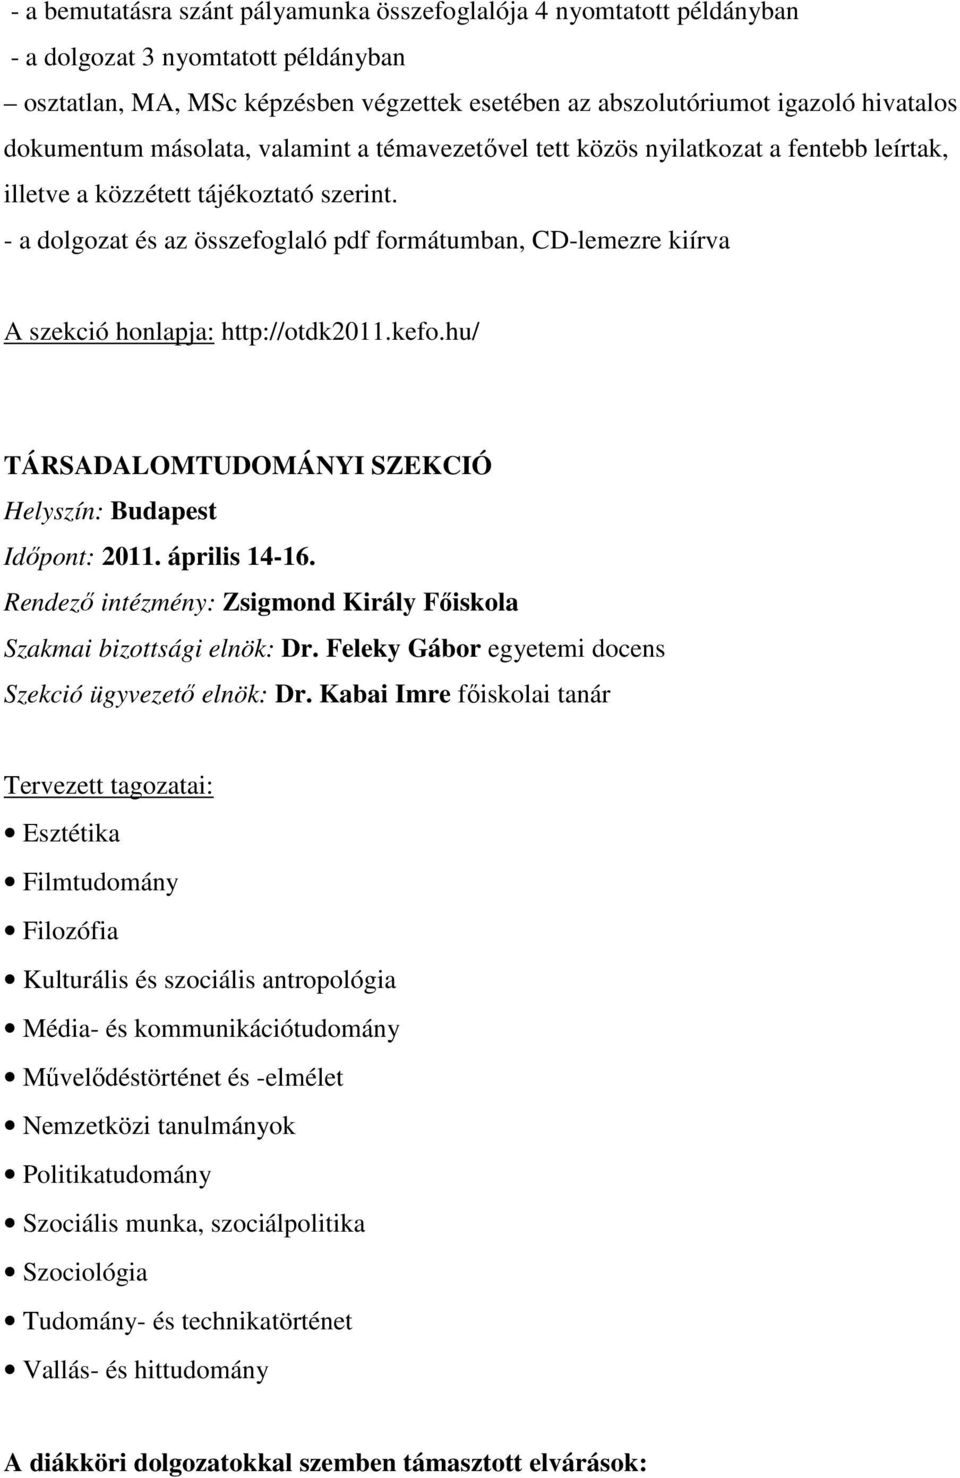 - a dolgozat és az összefoglaló pdf formátumban, CD-lemezre kiírva A szekció honlapja: http://otdk2011.kefo.hu/ TÁRSADALOMTUDOMÁNYI SZEKCIÓ Helyszín: Budapest Időpont: 2011. április 14-16.